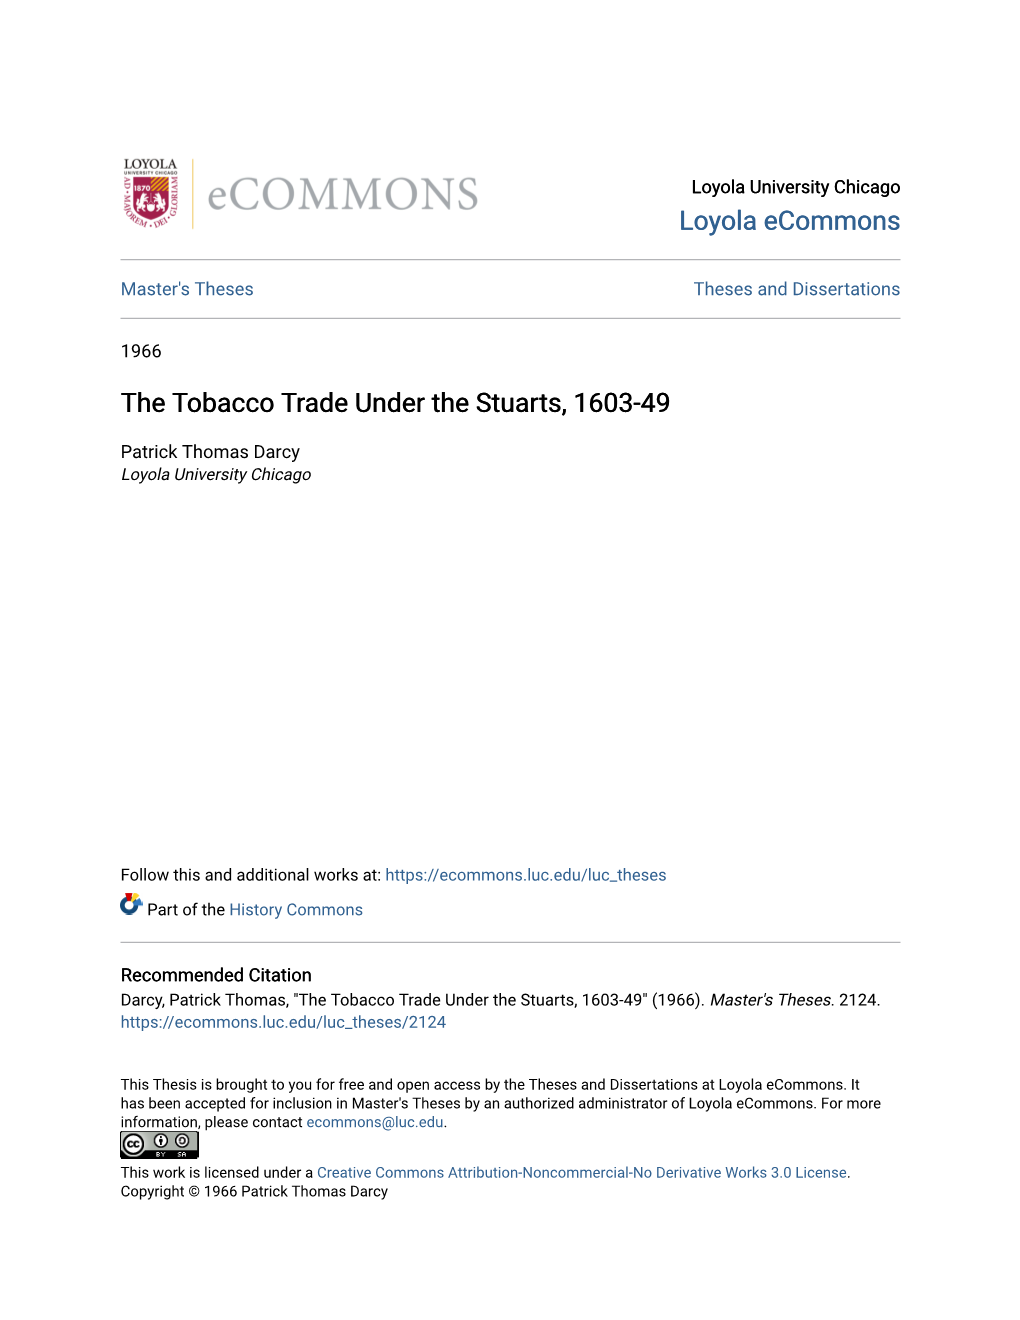 The Tobacco Trade Under the Stuarts, 1603-49